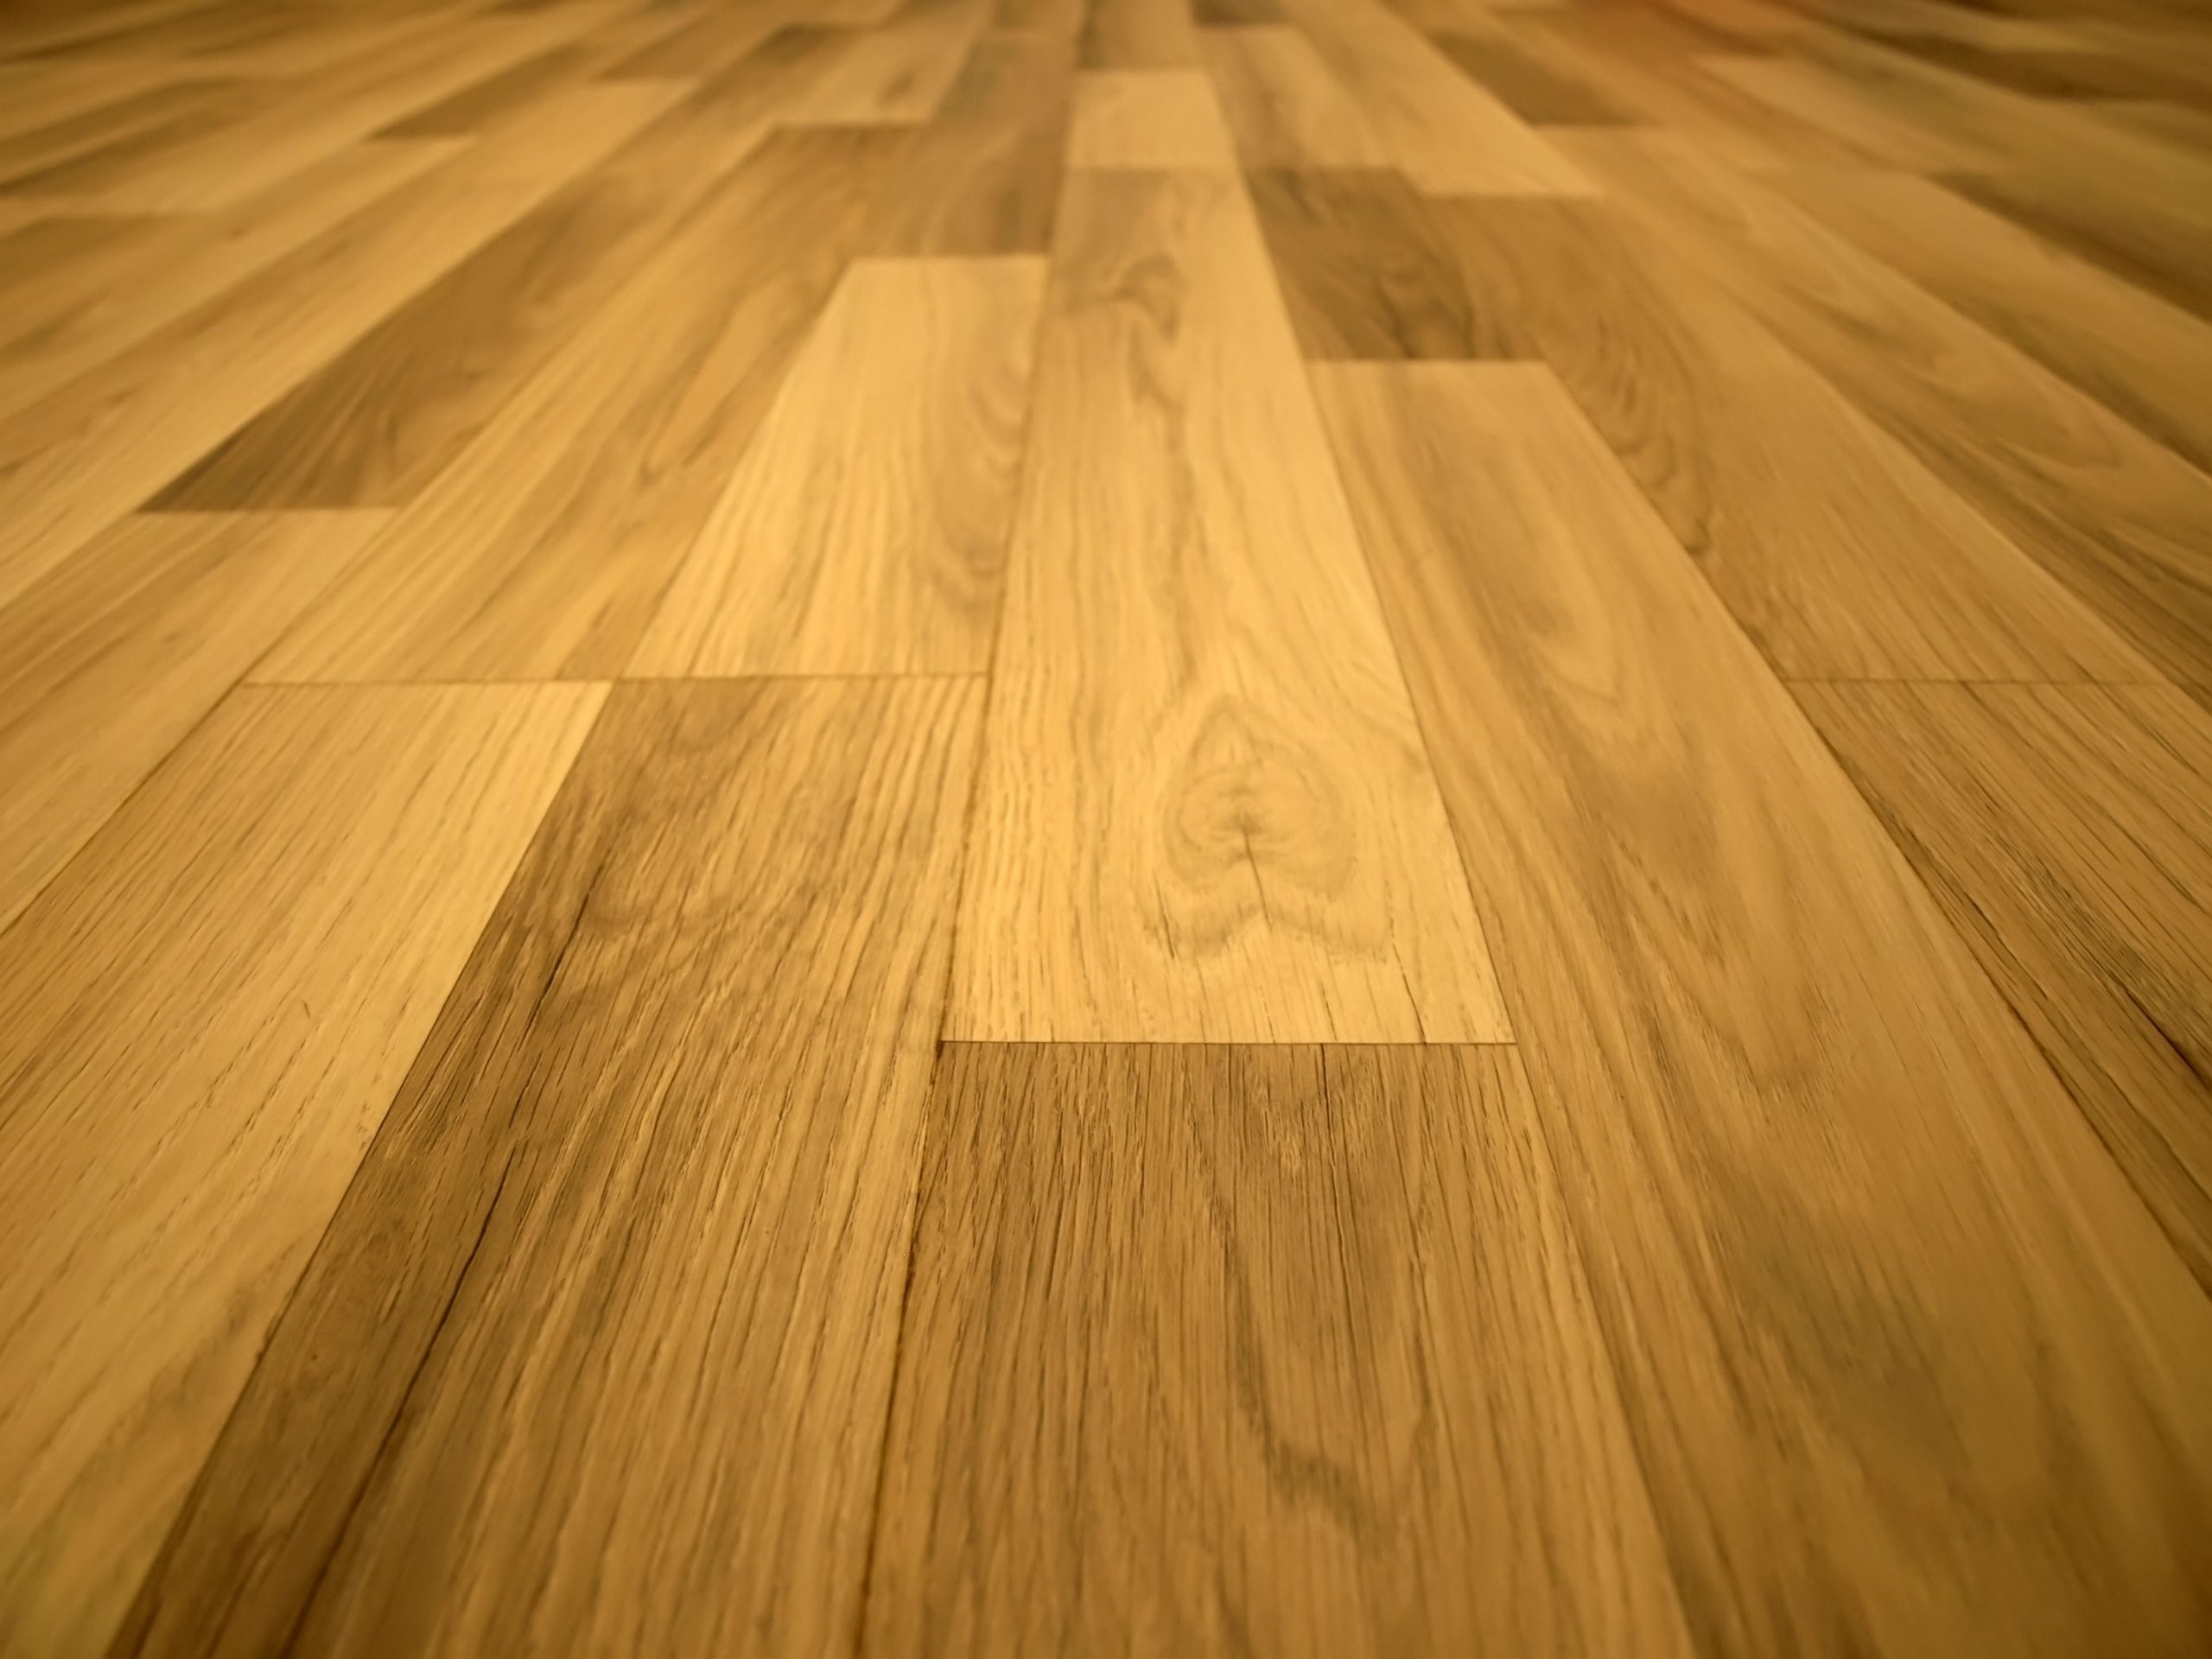 wide-plank-wood-floor